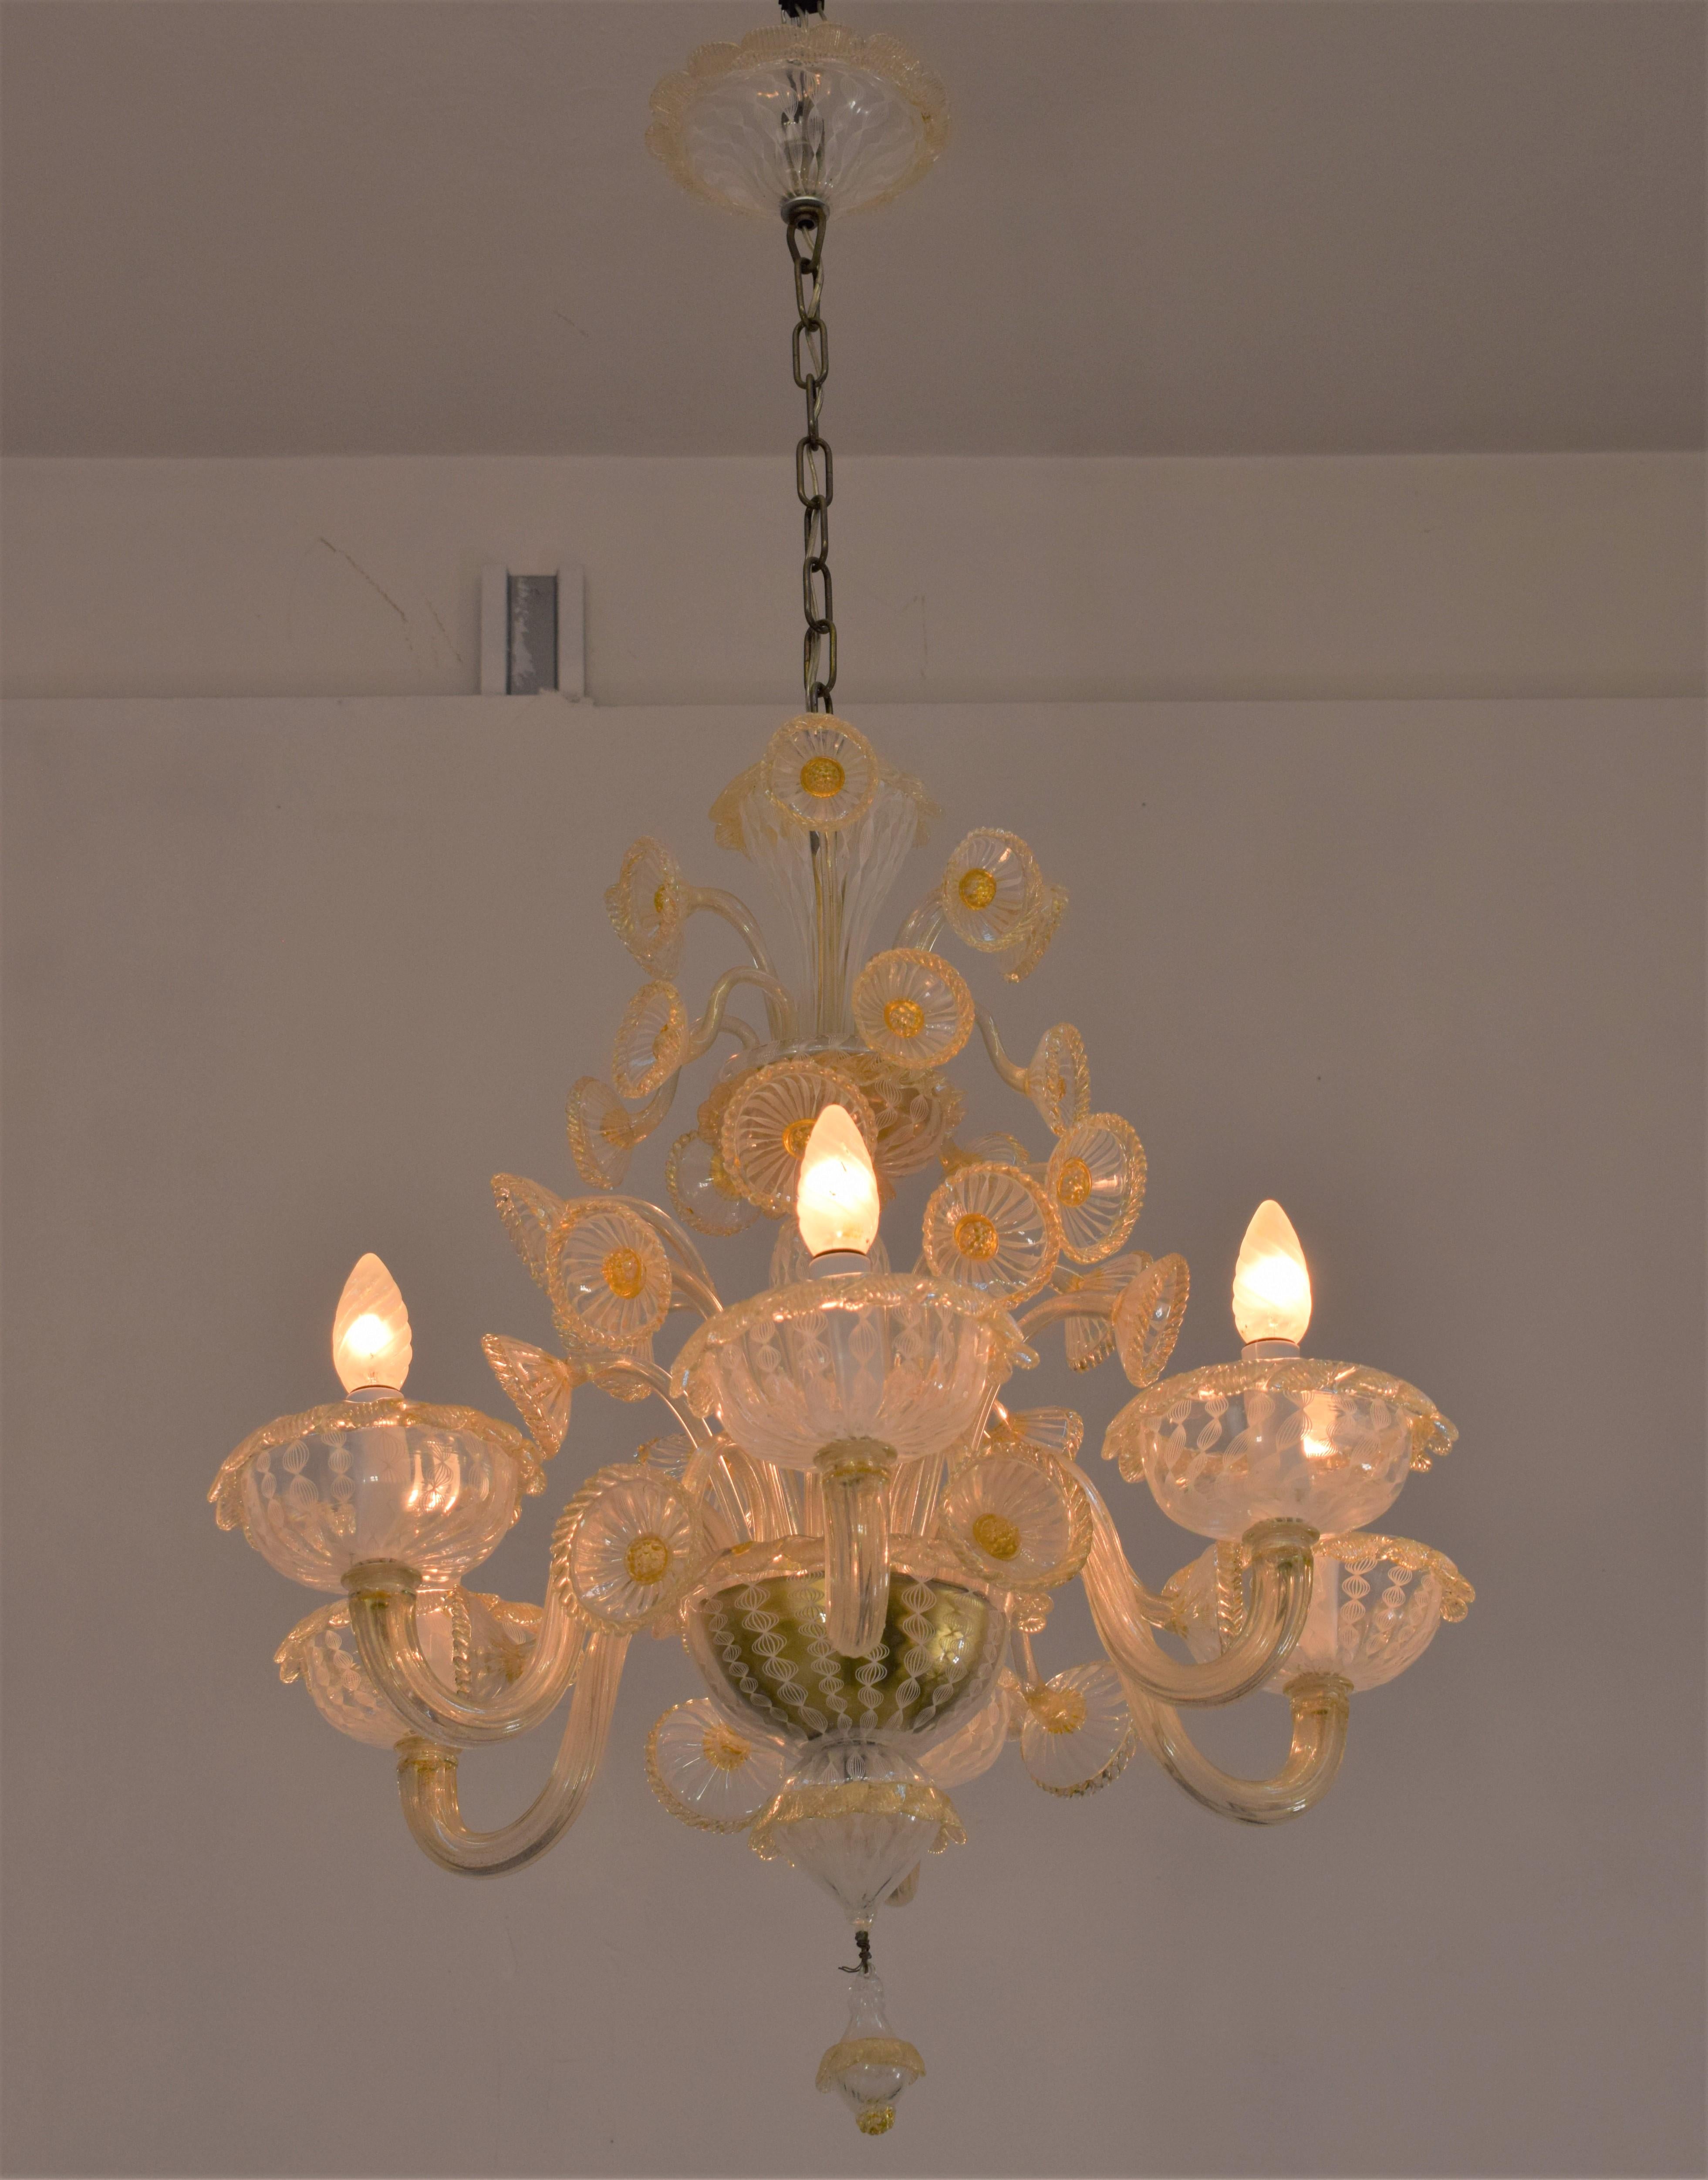 Italian chandelier by Venini, 1960s.

Dimensions: H= 110 cm; D= 65 cm.